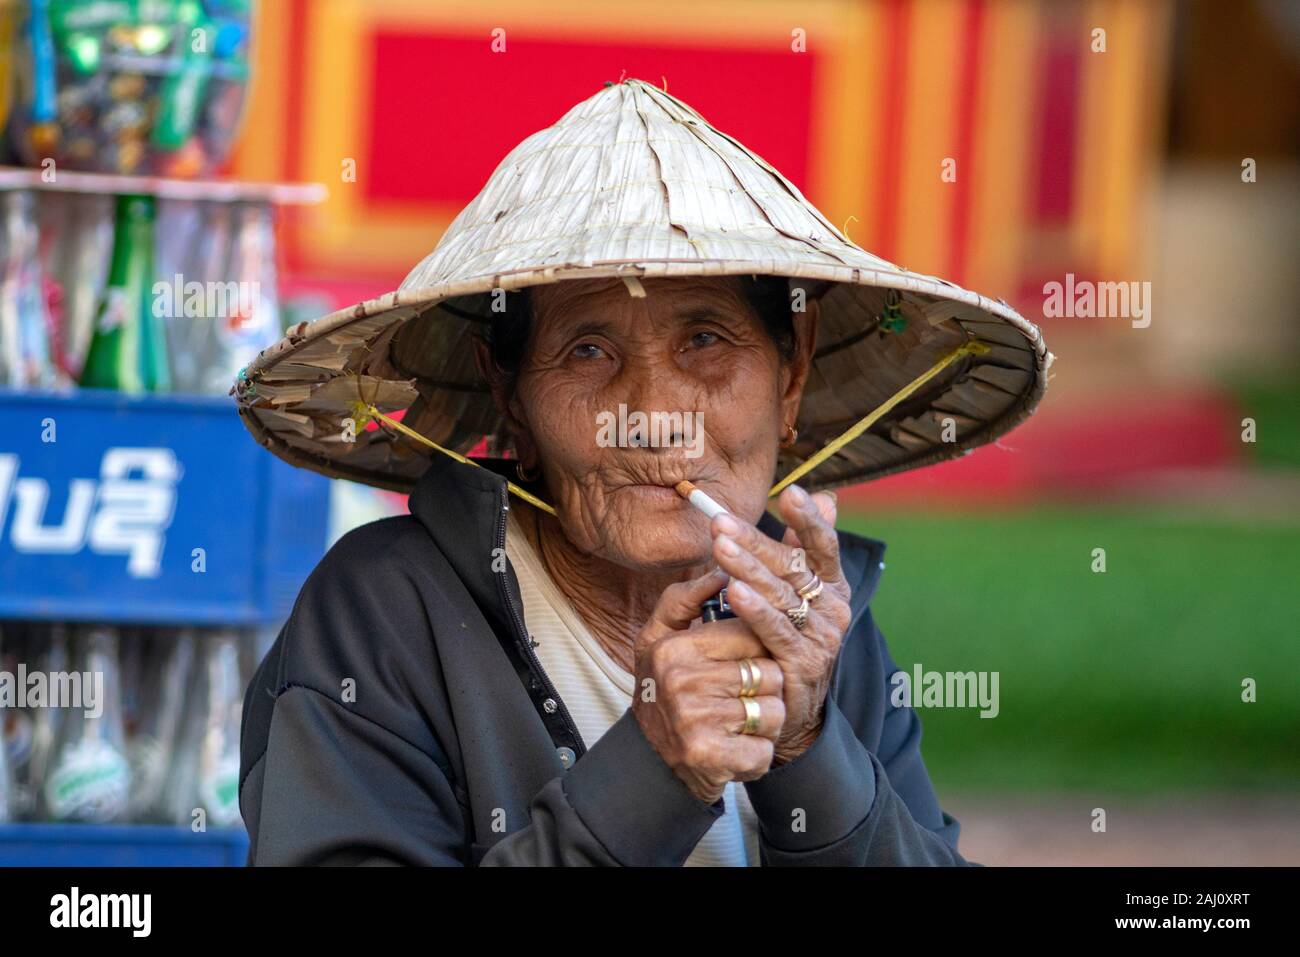 Asiatische Frau Verhalten eine kegelförmige Hut zündet sich eine Zigarette mit einem Feuerzeug Stockfoto